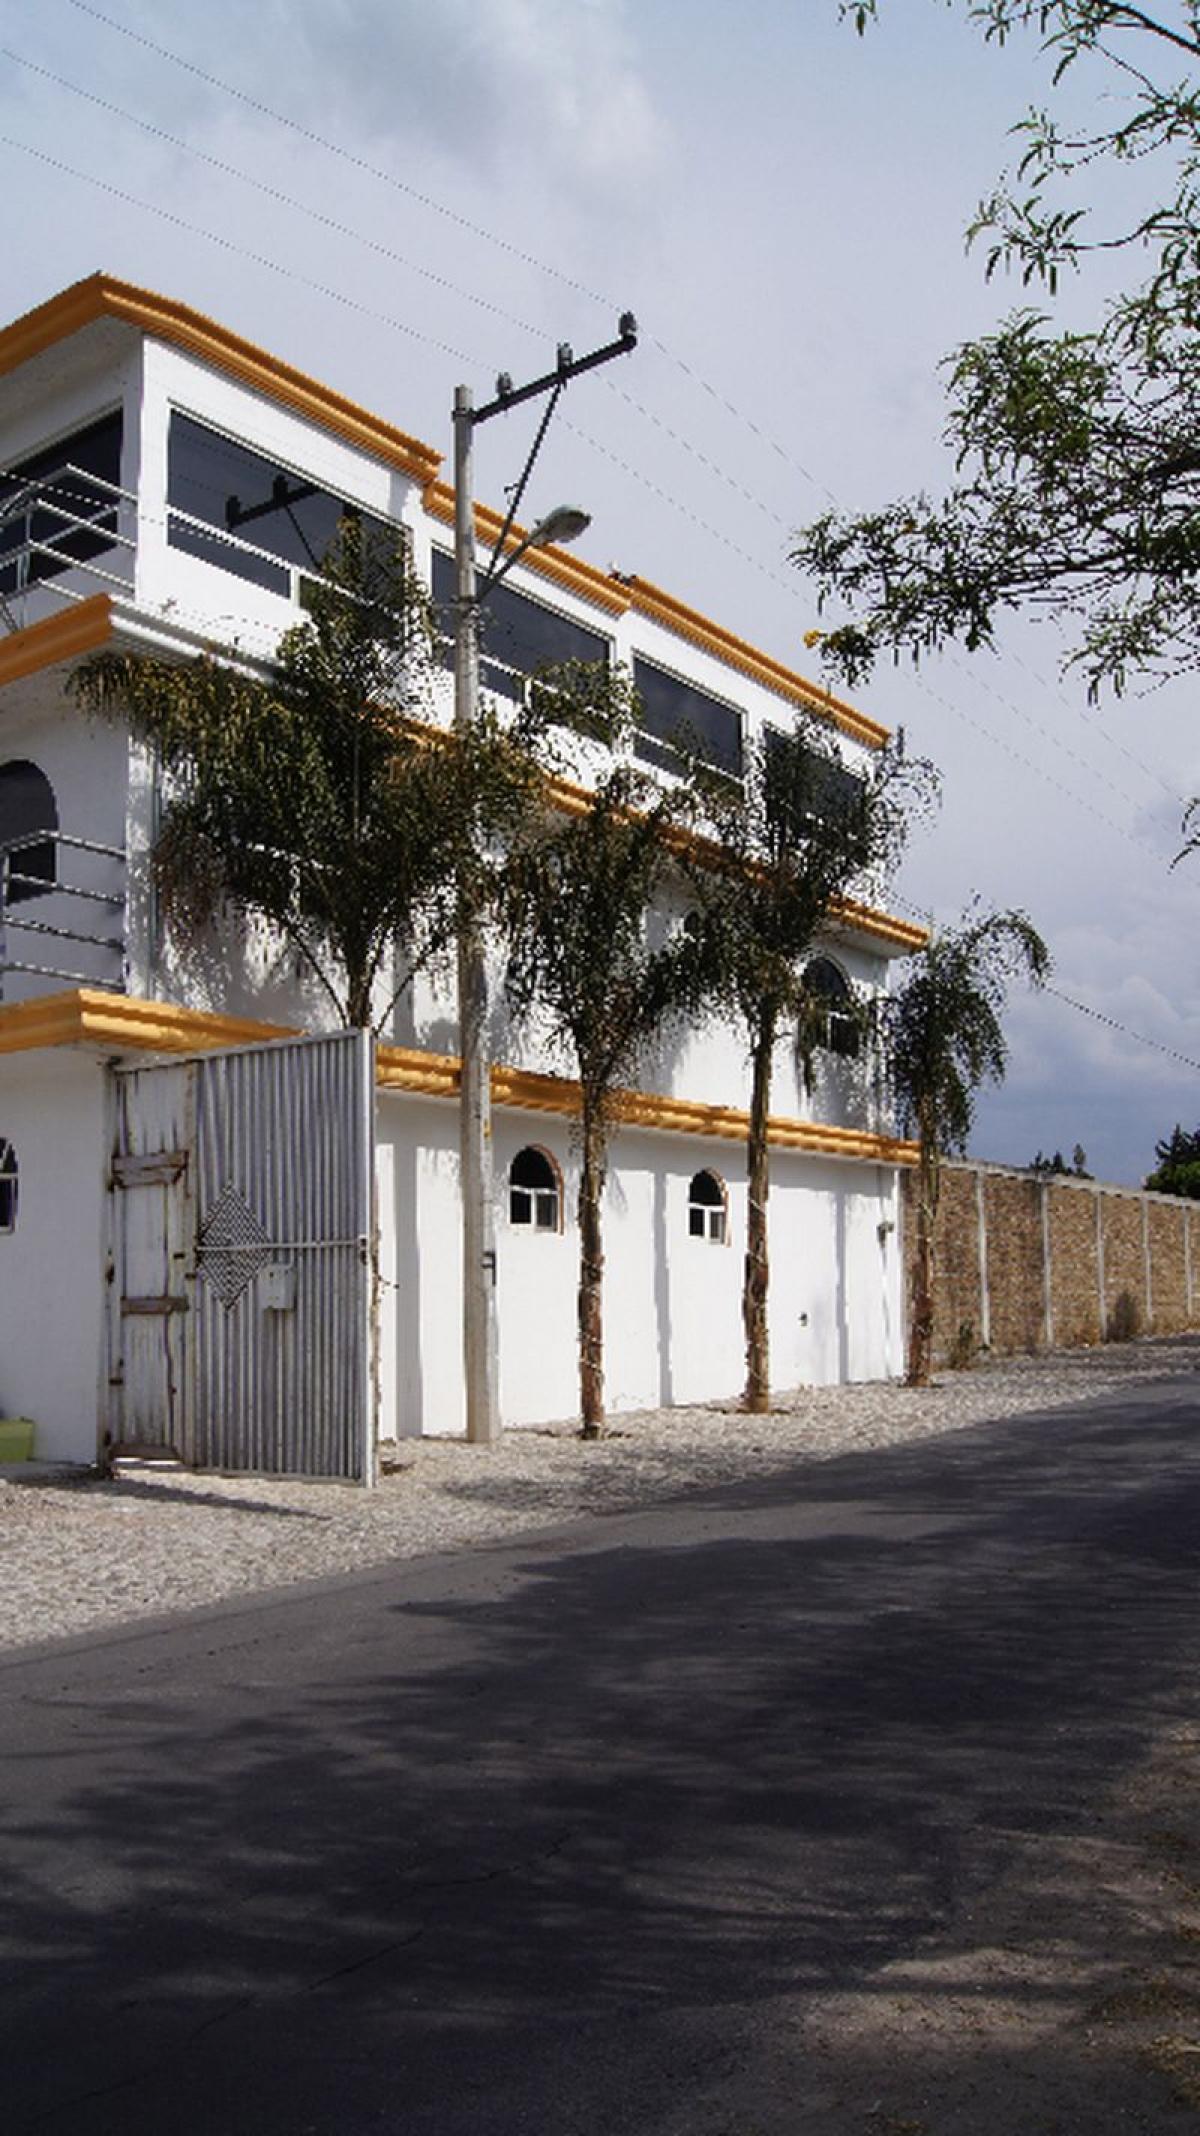 Picture of Development Site For Sale in Puebla, Puebla, Mexico